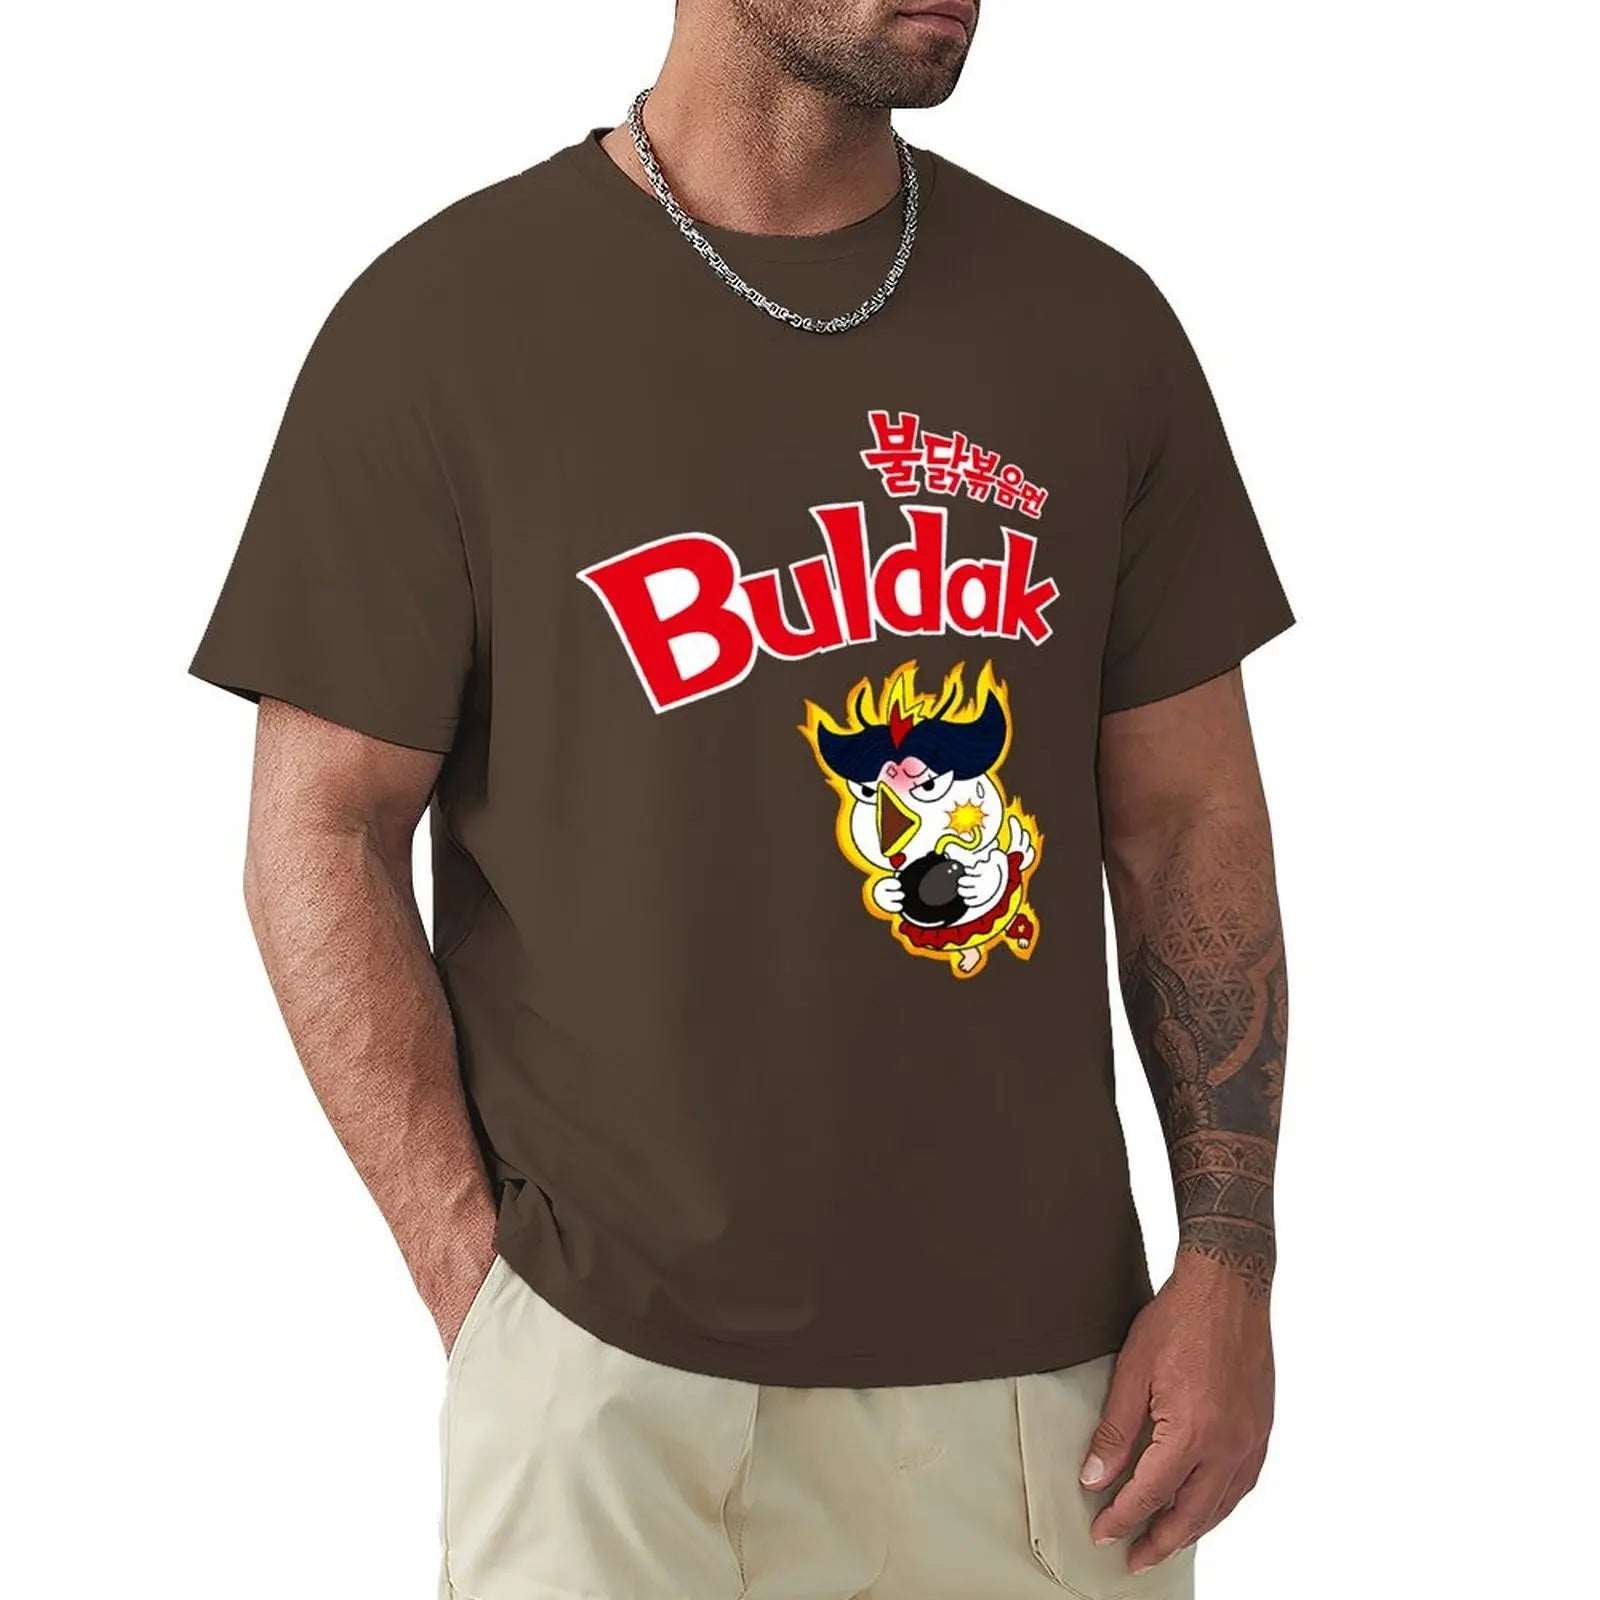 Buldak Hot Chicken Ramen T-Shirt - T Shirts from Dear Cece - Just £24.99! Shop now at Dear Cece